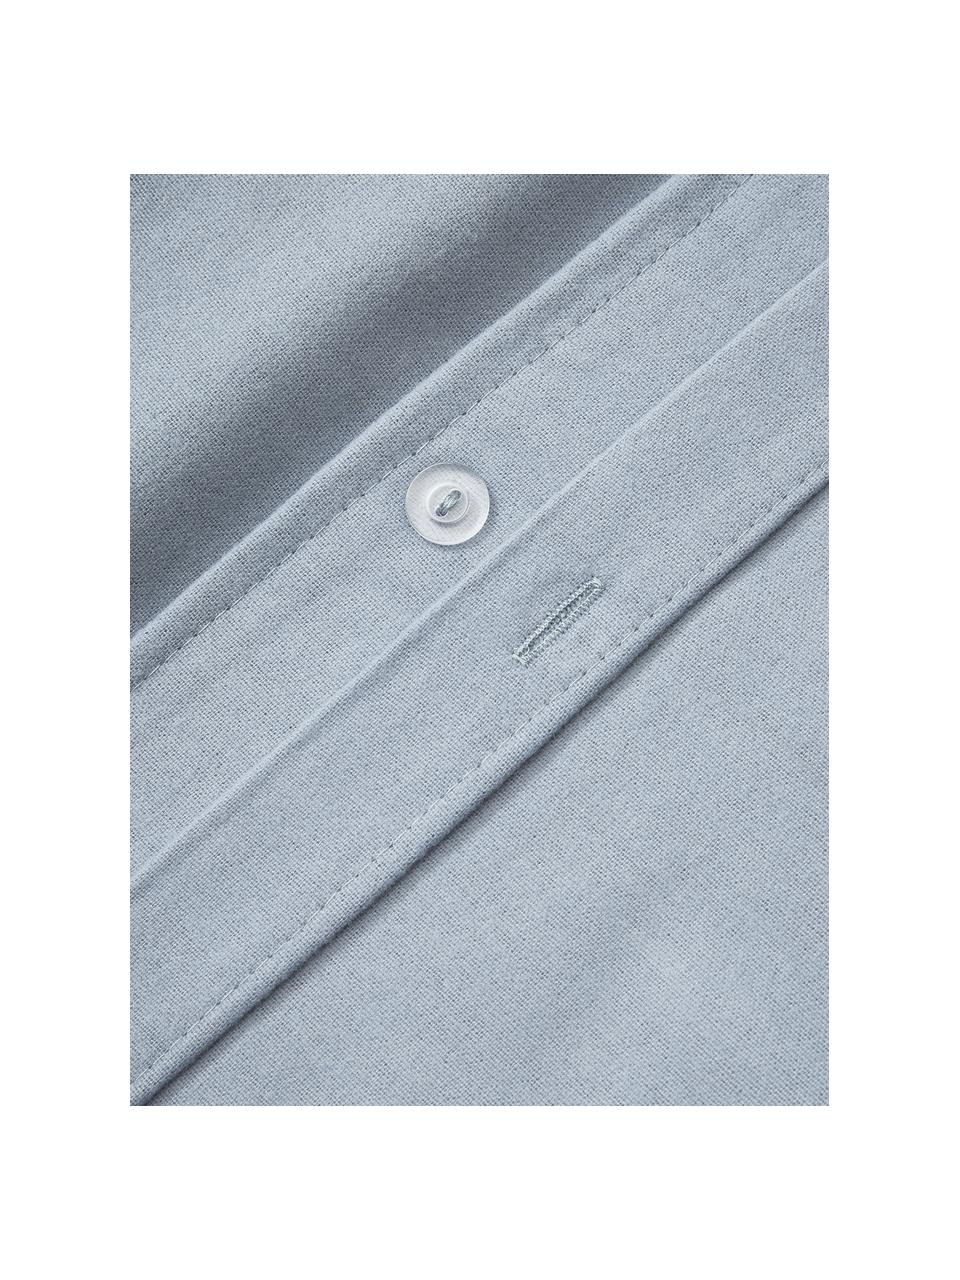 Flanell-Kopfkissenbezug Biba, Webart: Flanell, Hellblau, B 40 x L 80 cm